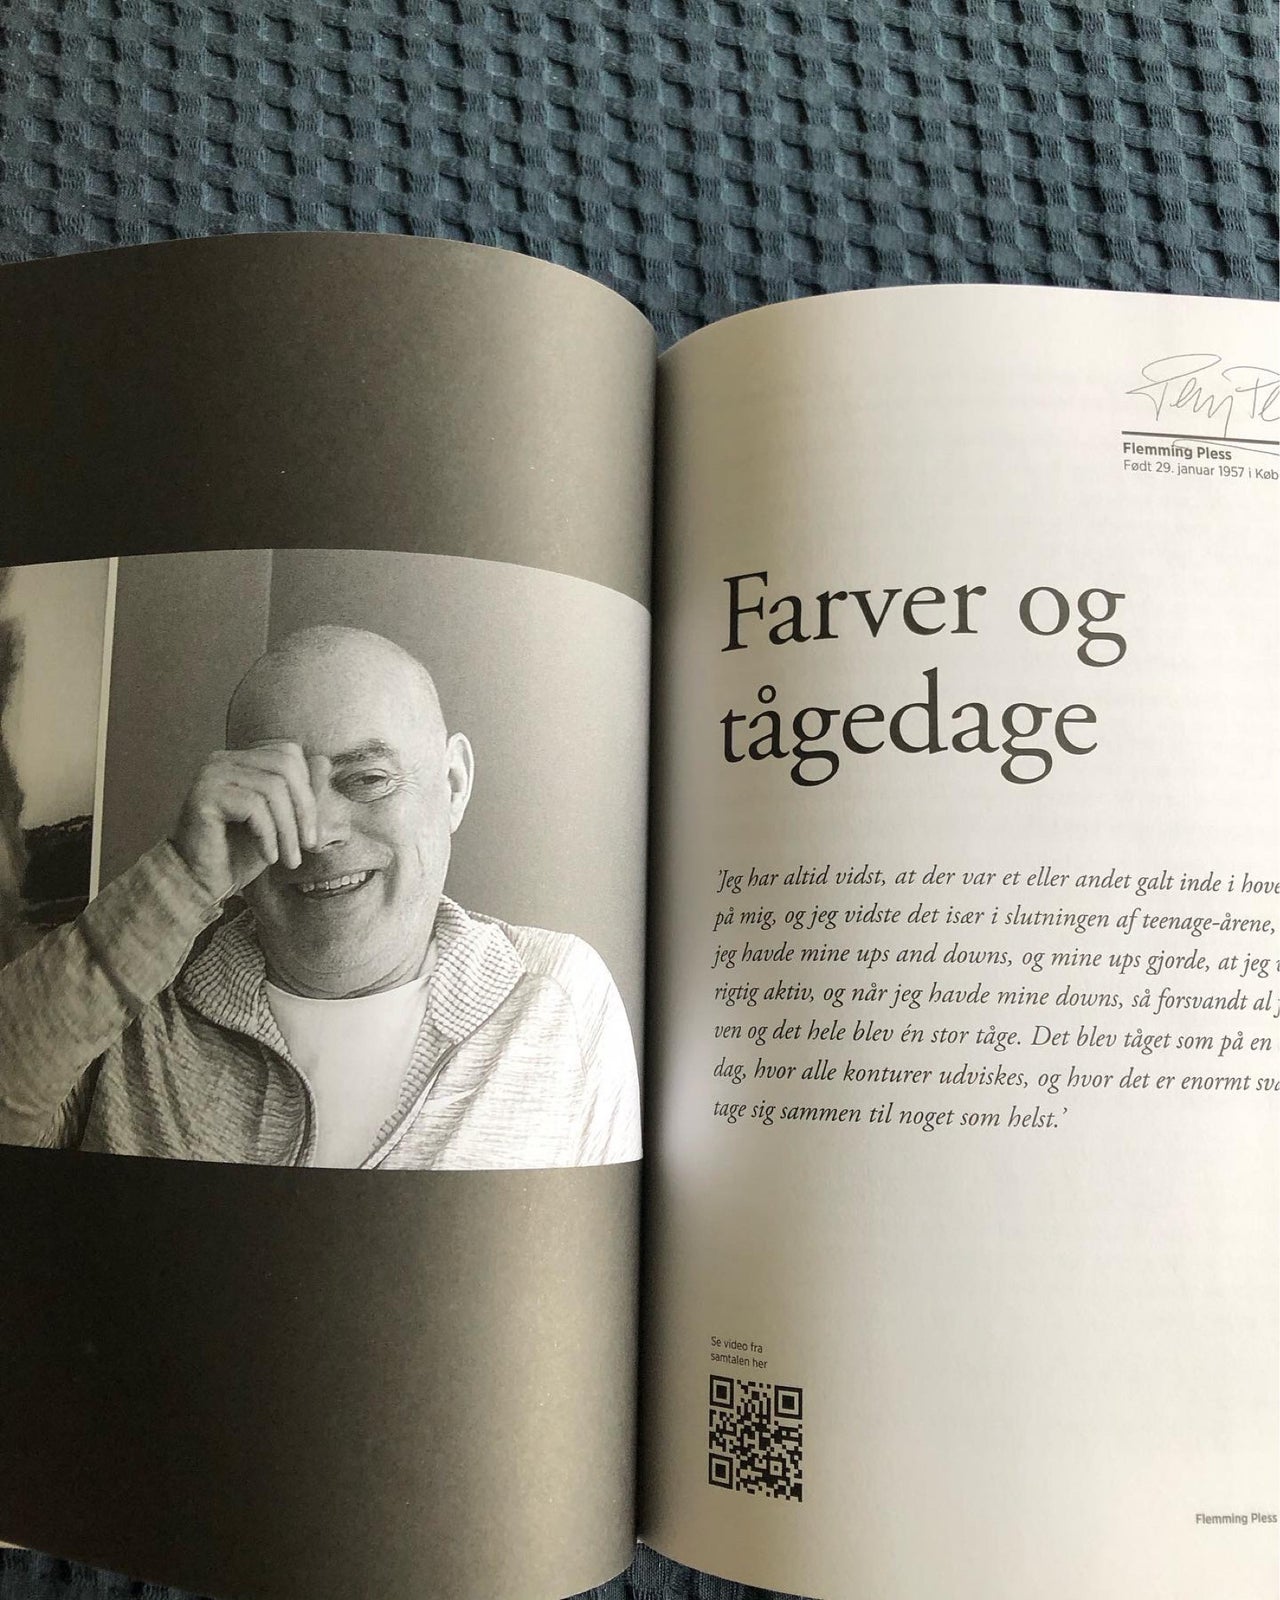 Bøger af journalist Bo Østlund